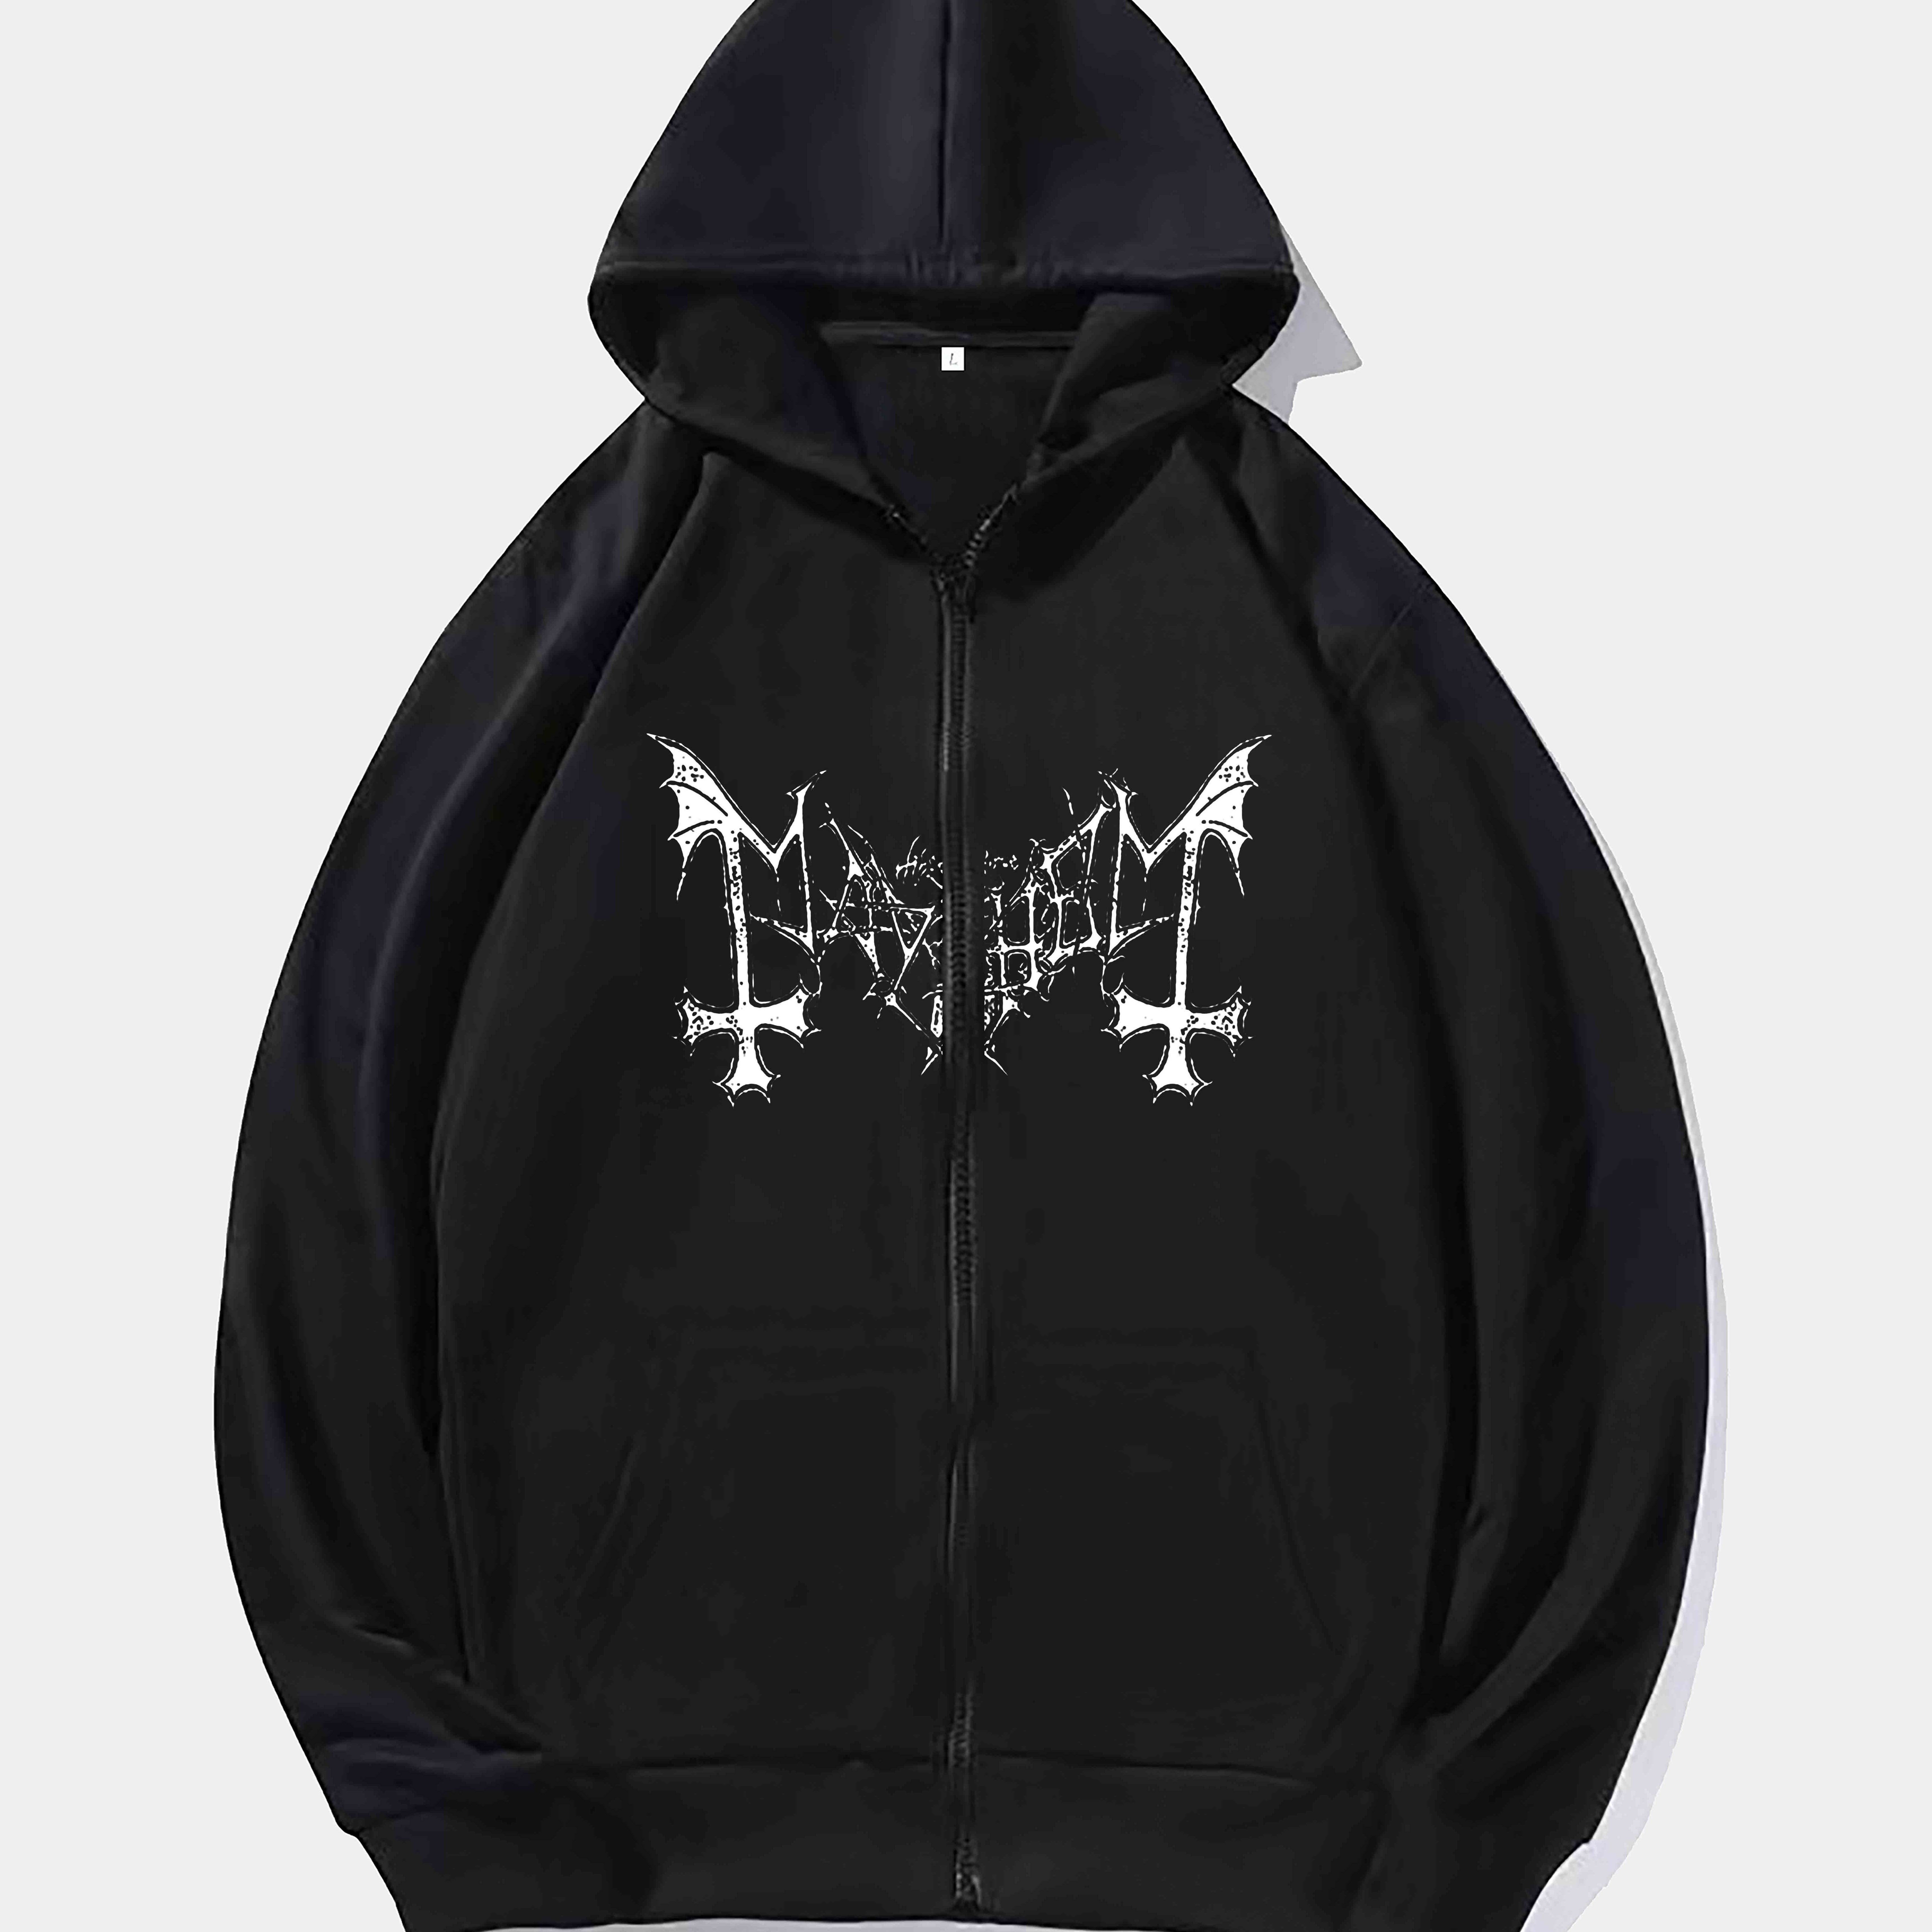 

Bat Wings And Skeleton Print, Men's Full-zip Hooded Sweatshirt Casual Long Sleeve Hoodies With Pockets Gym Sports Hooded Jacket